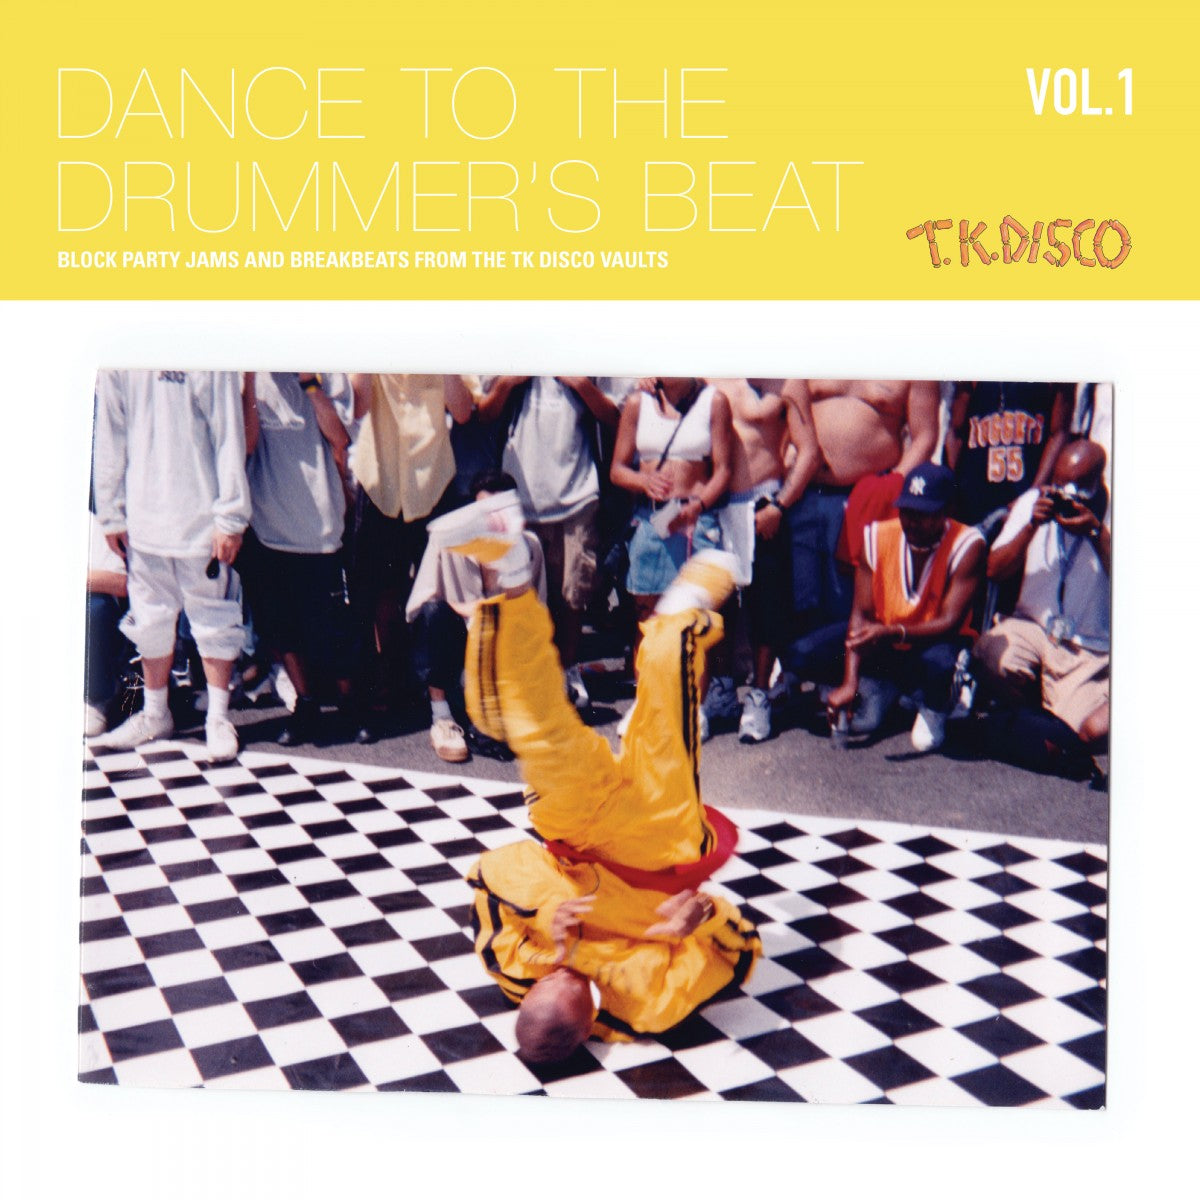 VARIOUS - Dance To The Drummer’s Beat Vol 1 - 2LP - Vinyl